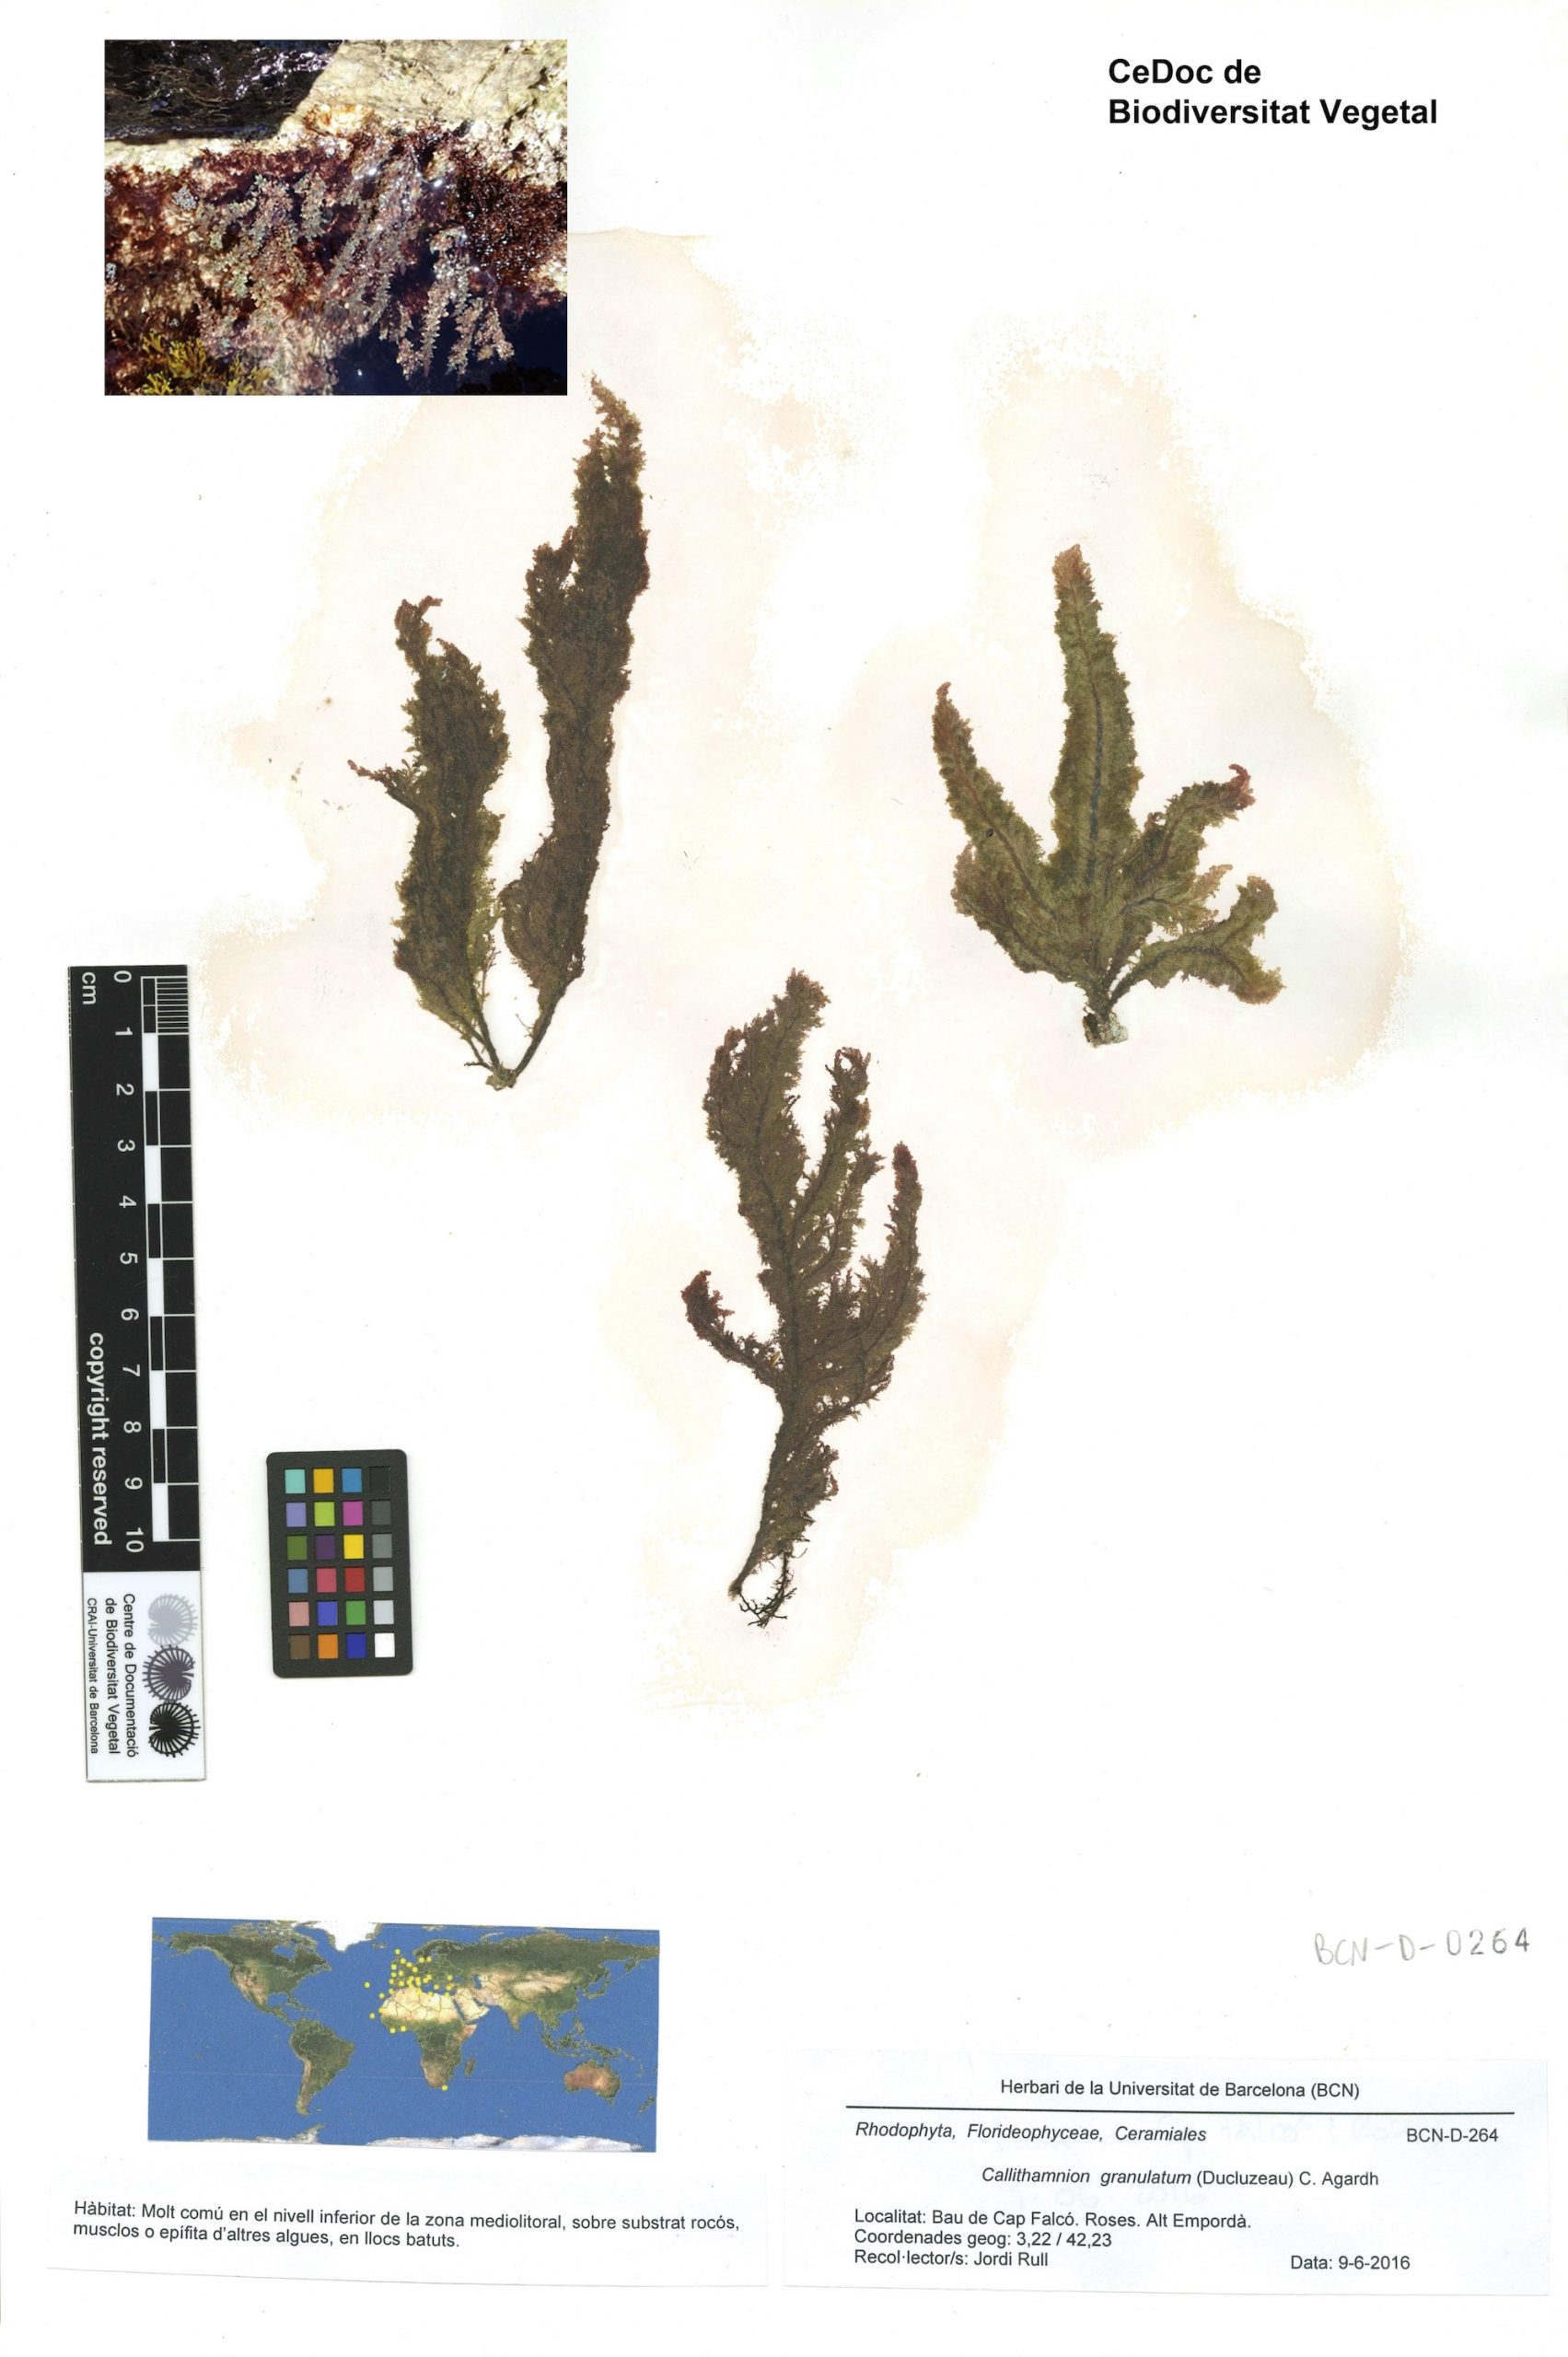 Callithamnion granulatum (Ducluzeau) C. Agardh